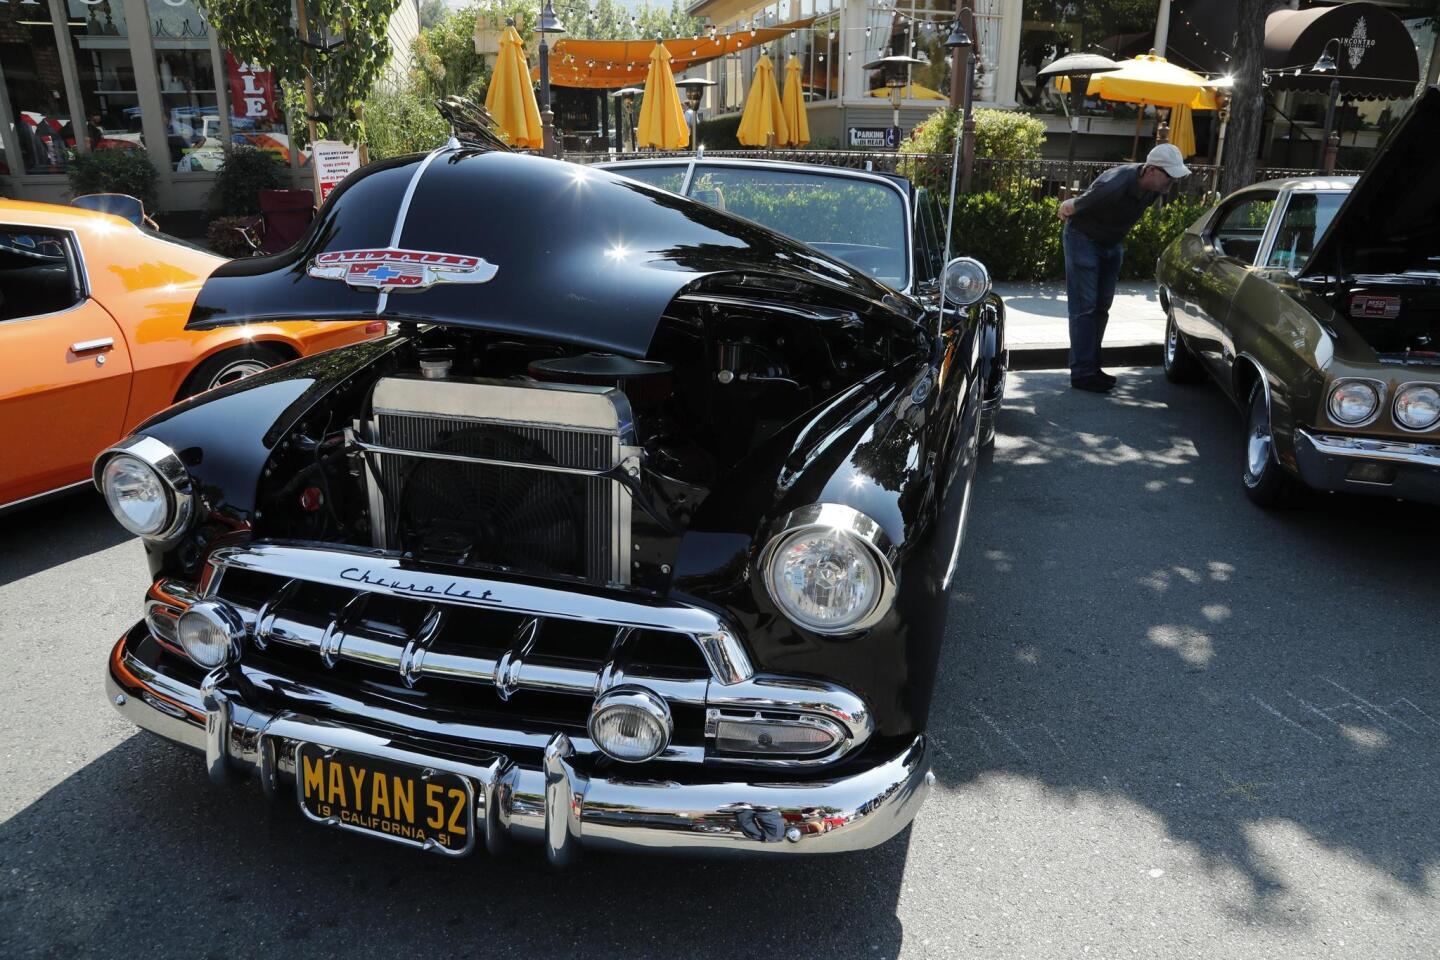 Este modelo de Chevrolet (Chevy) lo podrán ver en la 23ª edición del salón del coche clásico 'Hot Summer Nights: Hot Rod & Classic Car' en Danville, California.